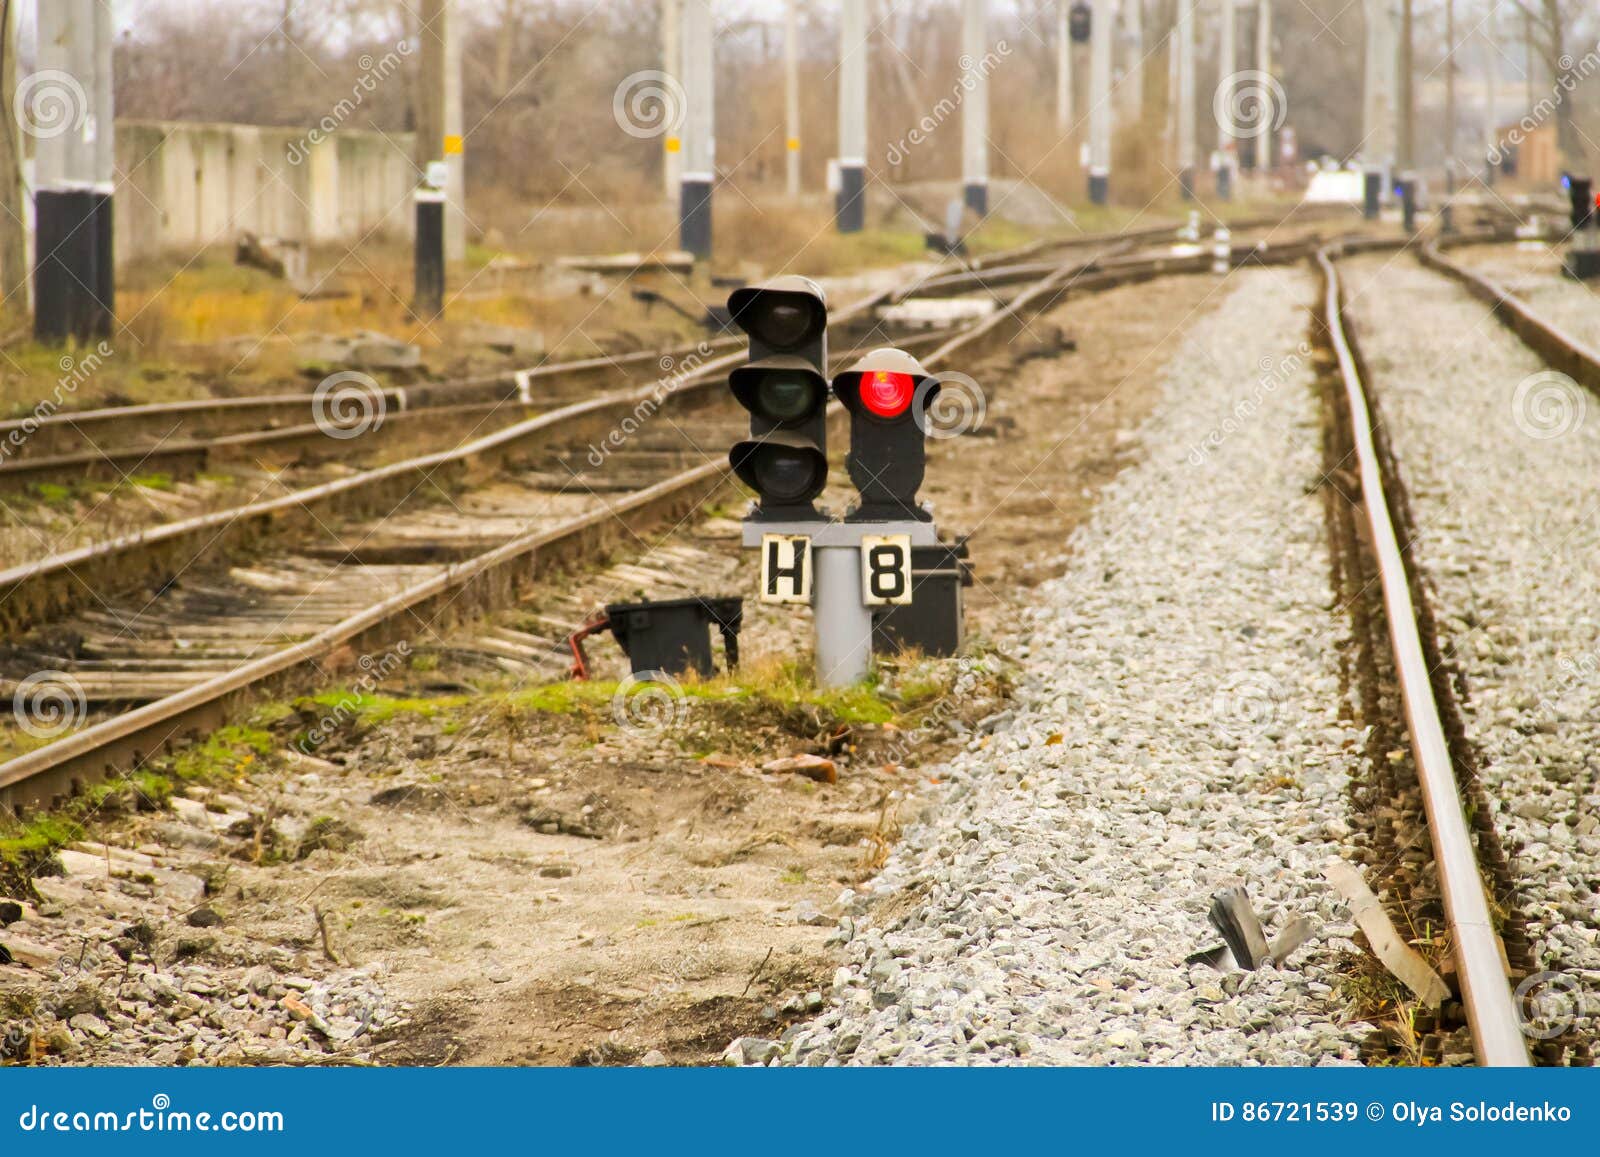 Включи приключения семафора. Семафор маневровый щит. Красный сигнал семафора. Семафор железная дорога. Семафор красный на железной дороге.